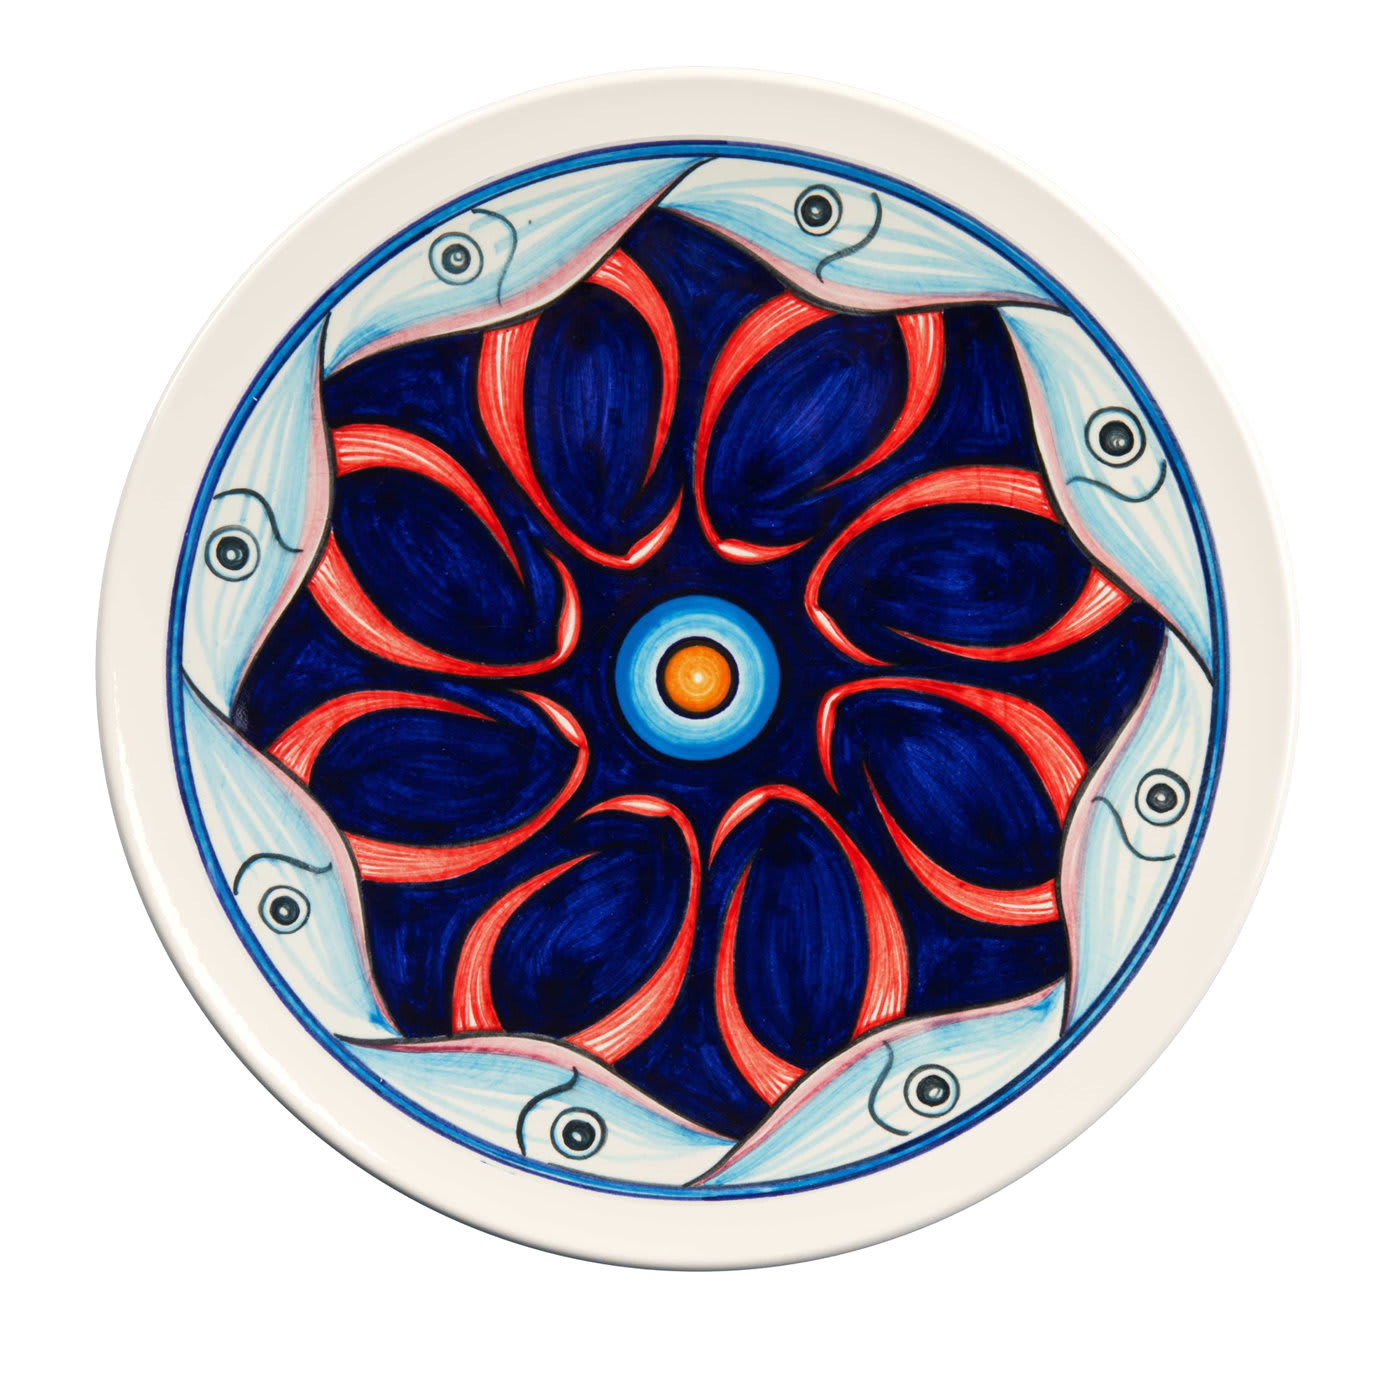 Colapesce Tentacoli Decorative Plate #1 - Crisodora